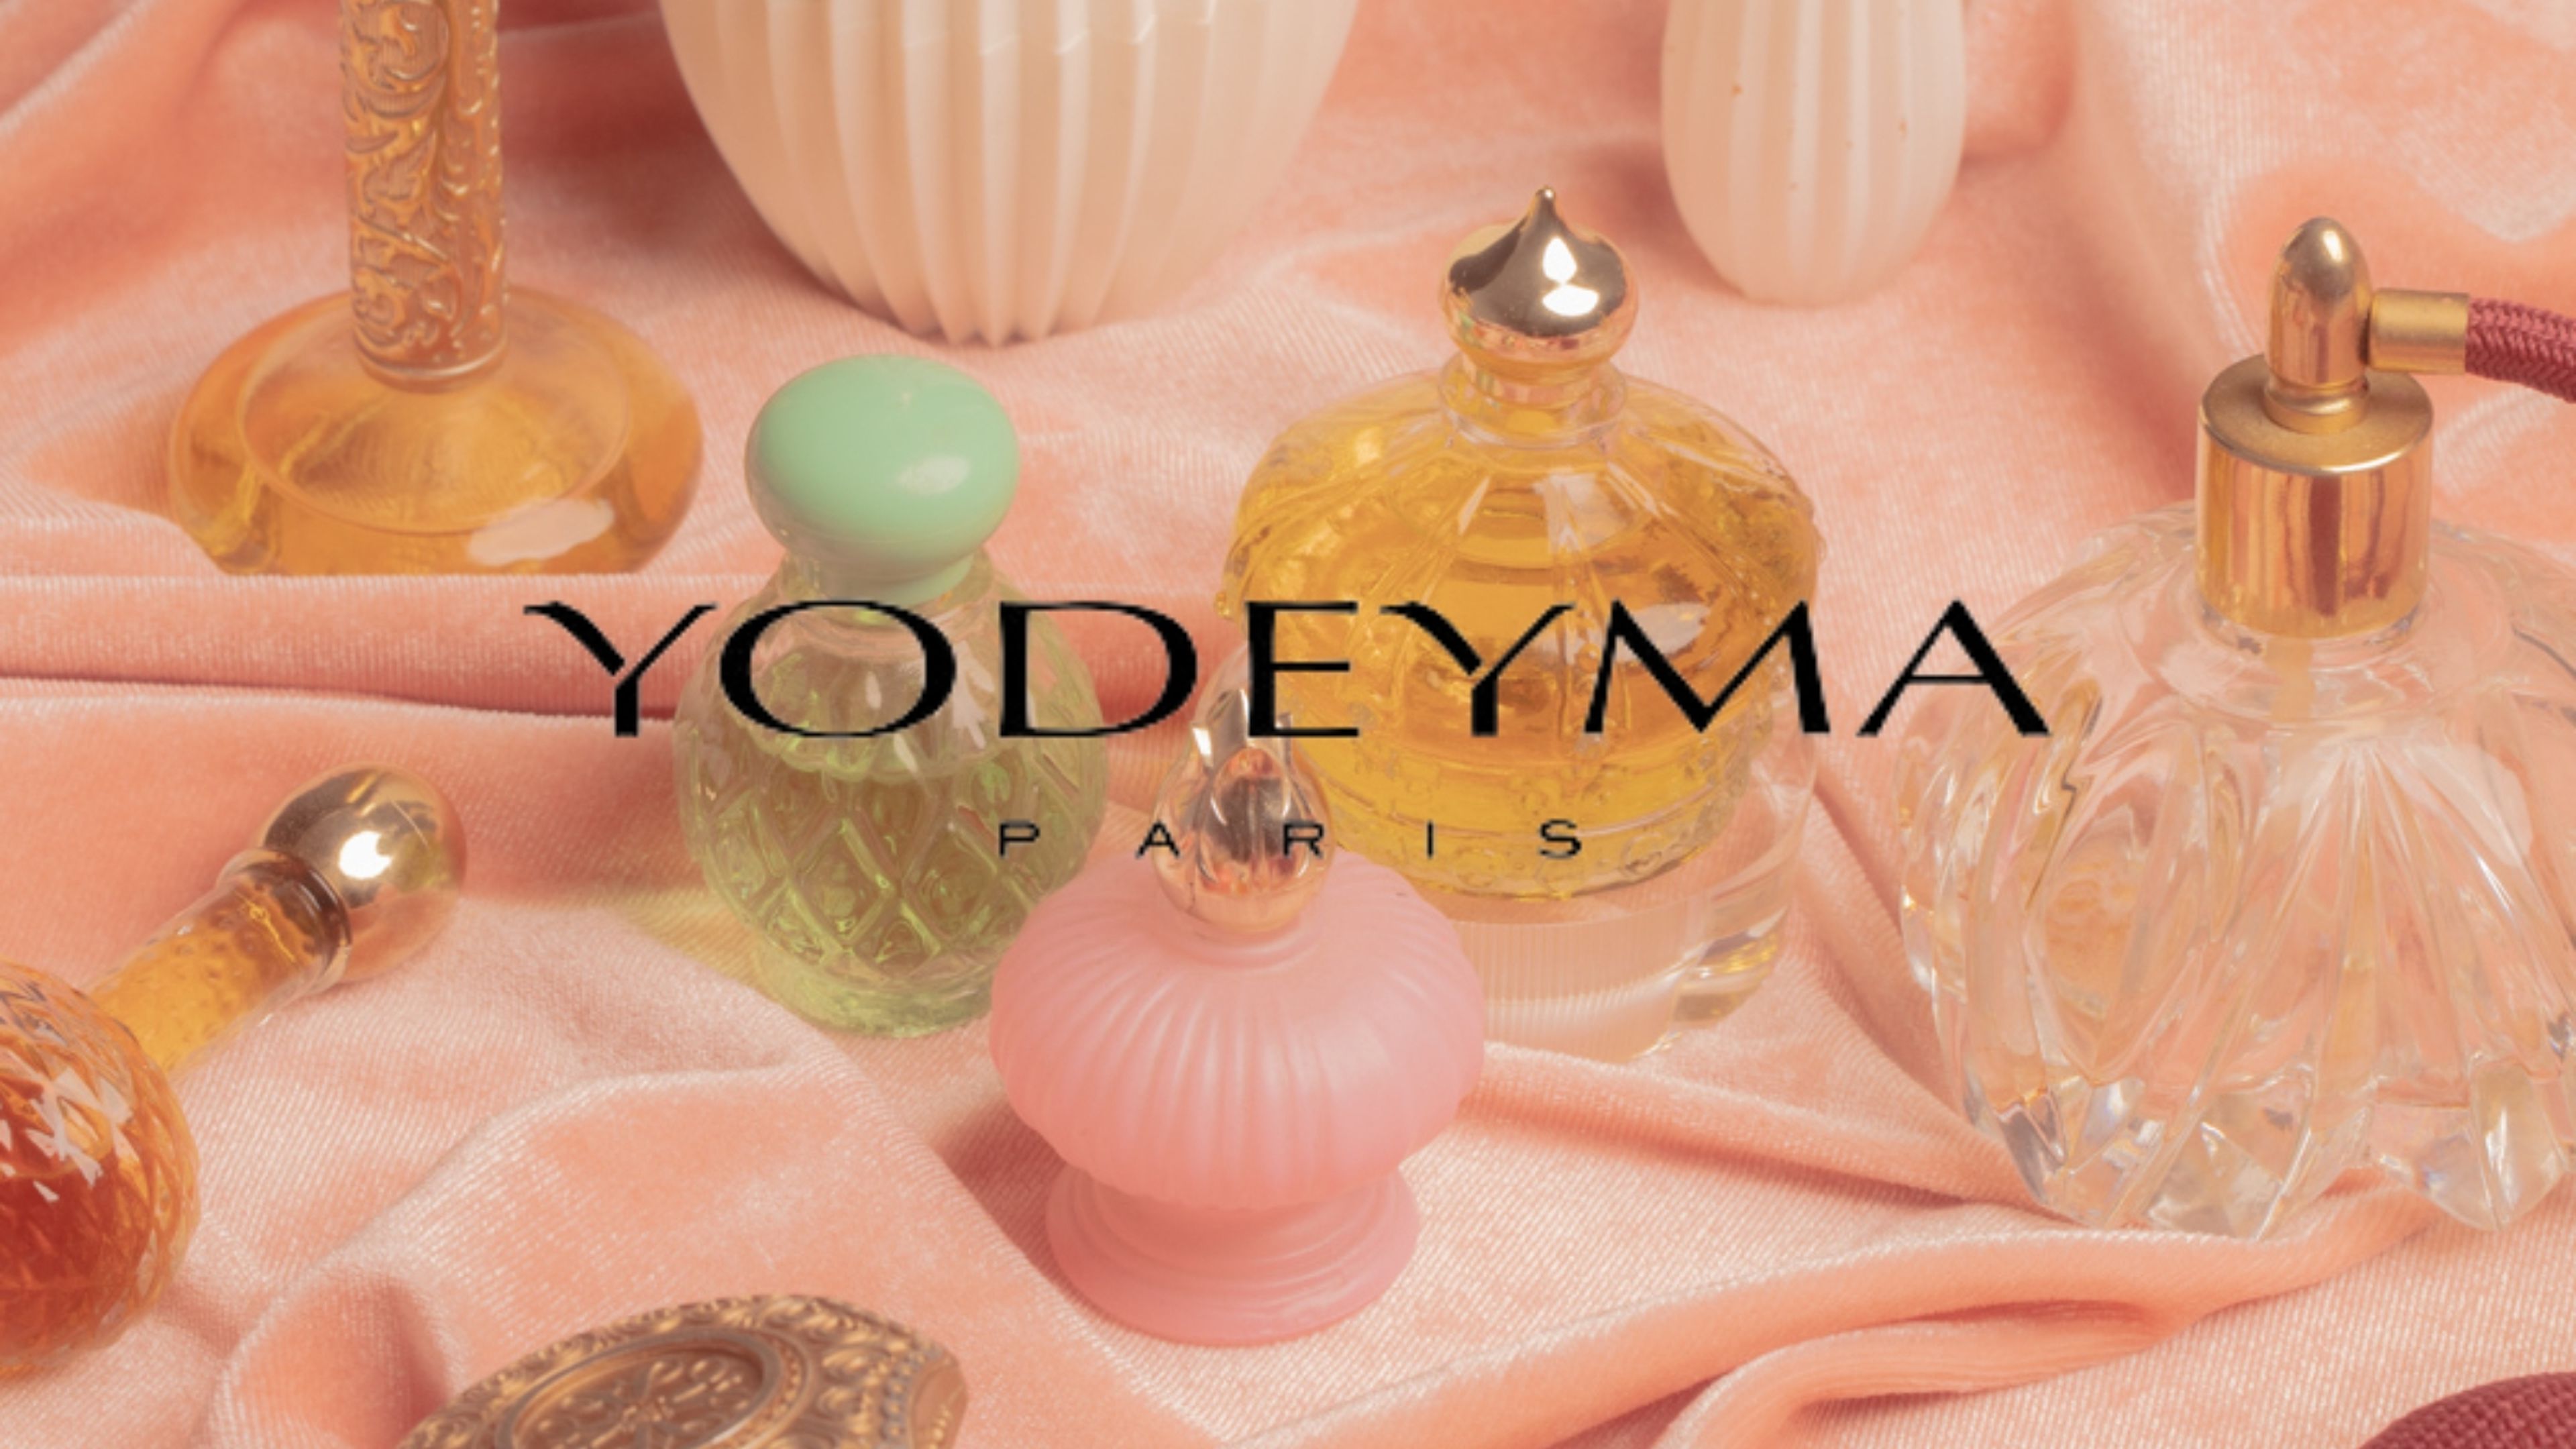 Equivalencias de los perfumes y colonias de Yodeyma